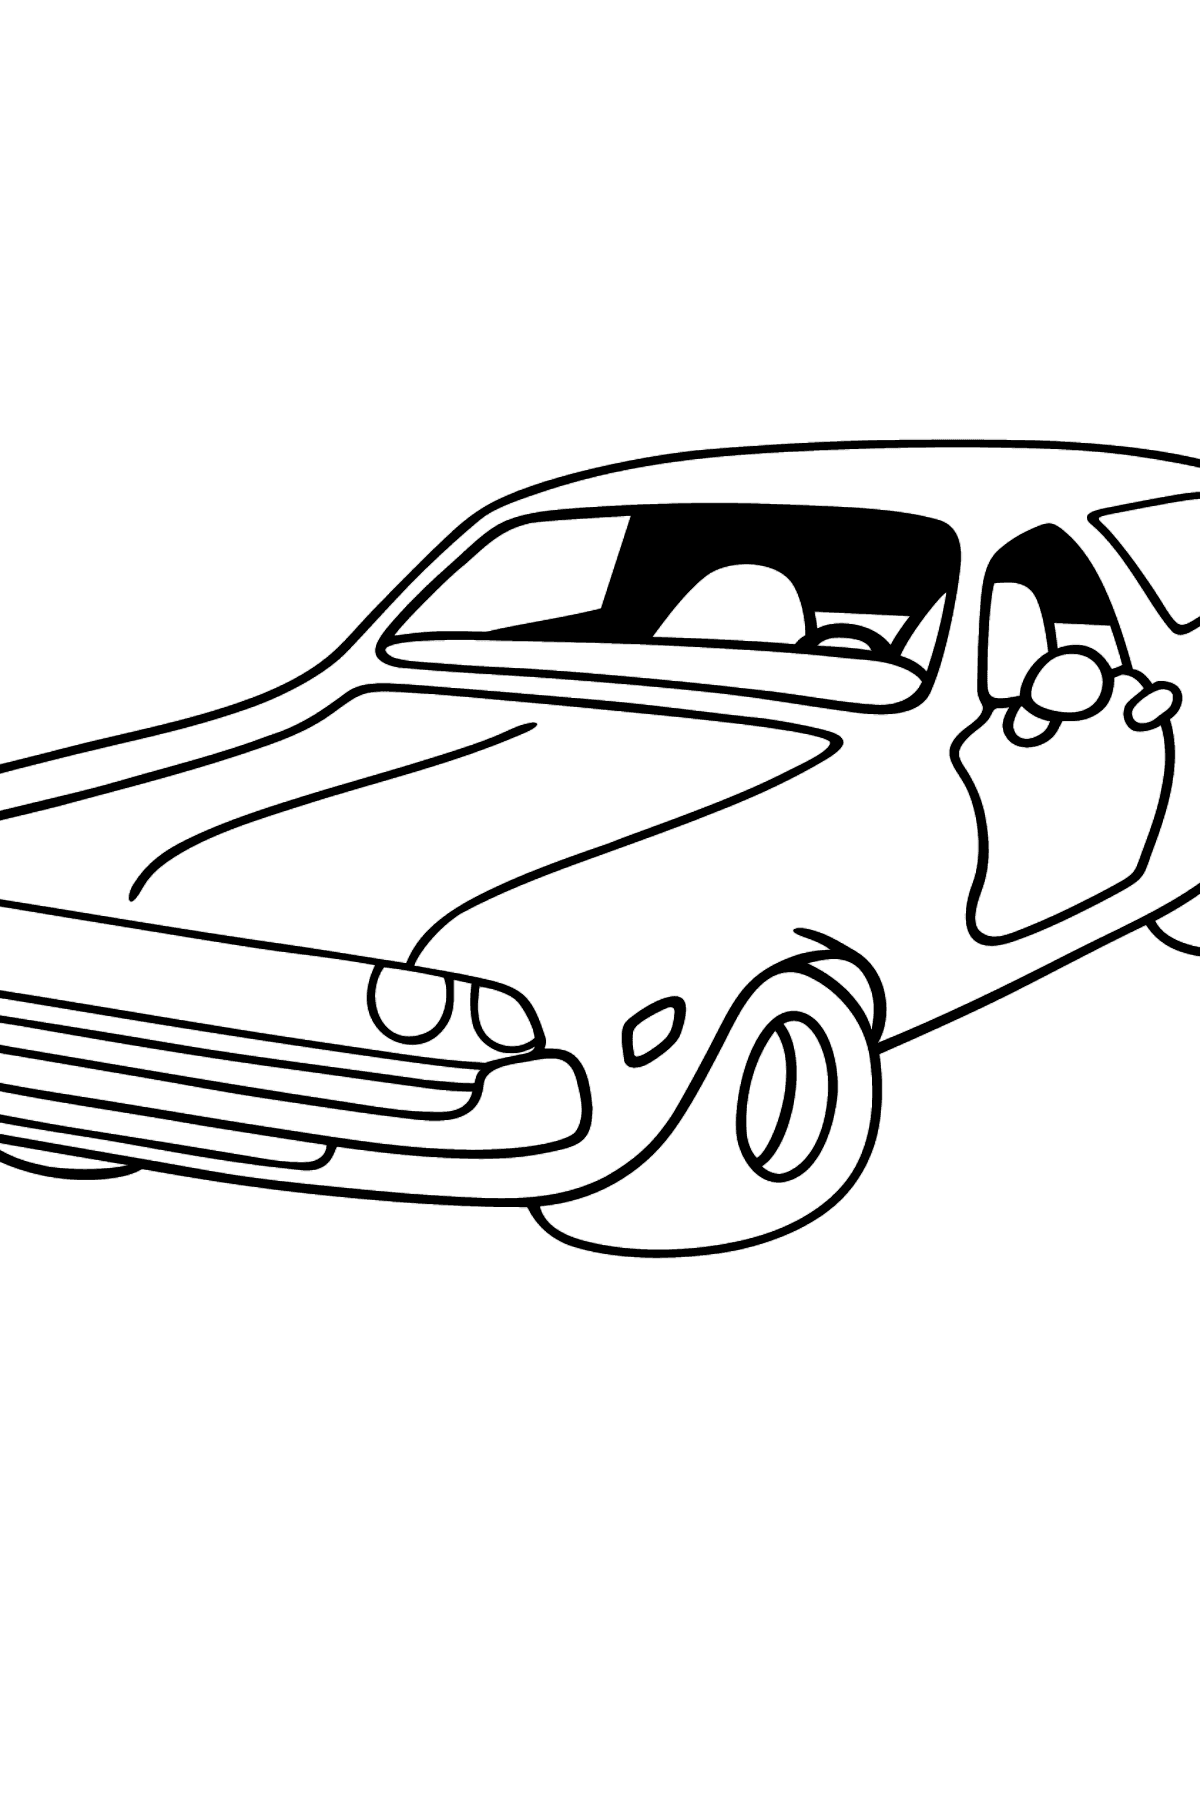 Desenho para colorir de um Carro Chevrolet-Chevy - Imagens para Colorir para Crianças